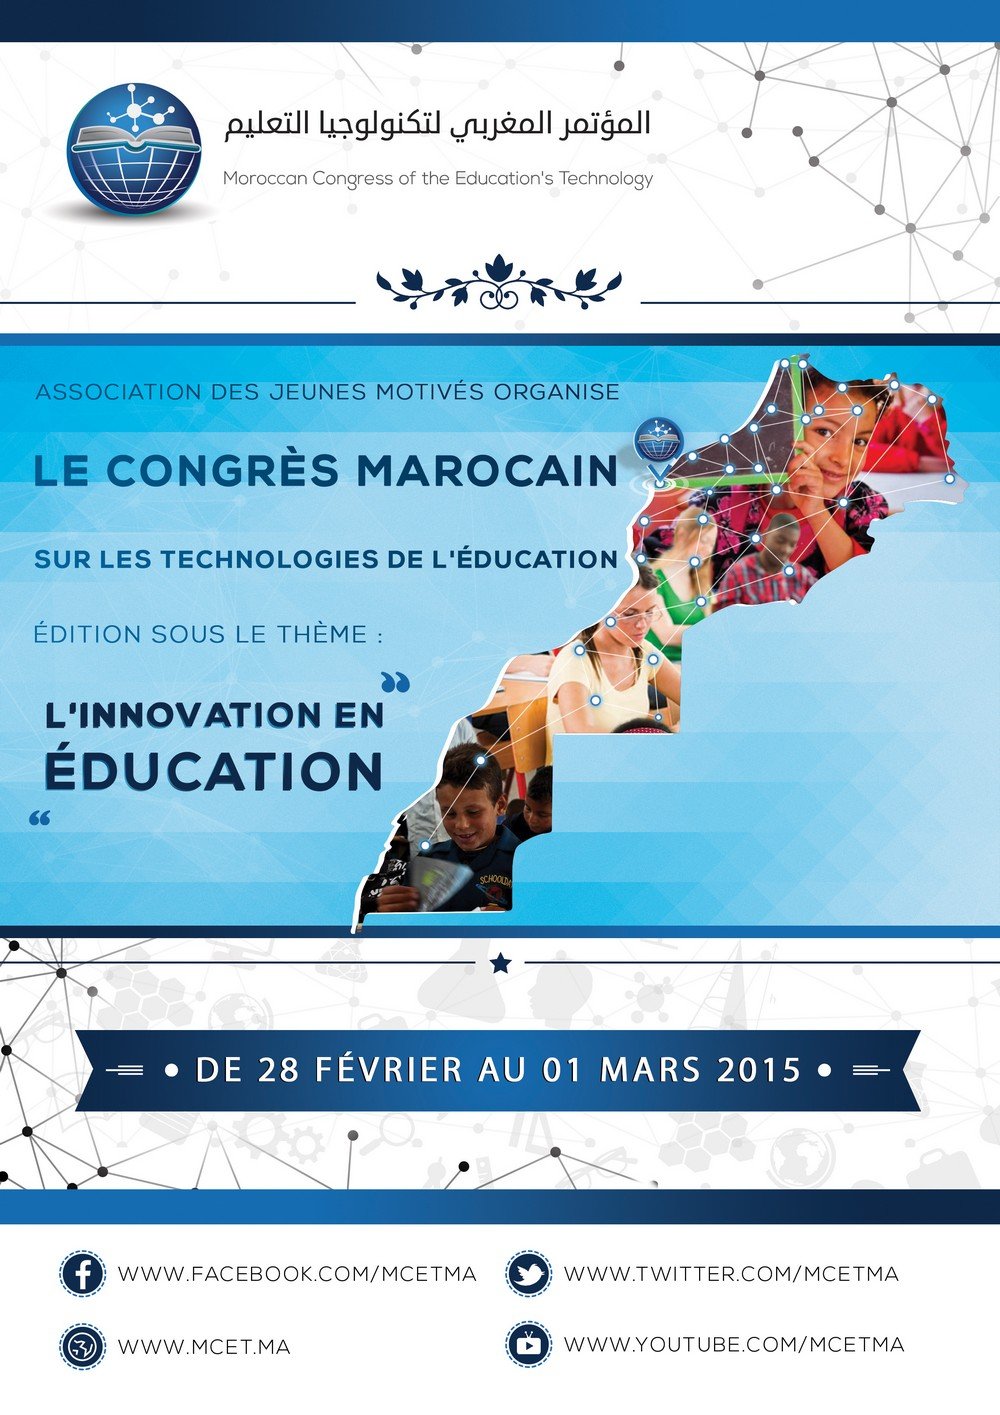 الاعلان عن المؤتمر المغربي لتكنولوجيا التعليم